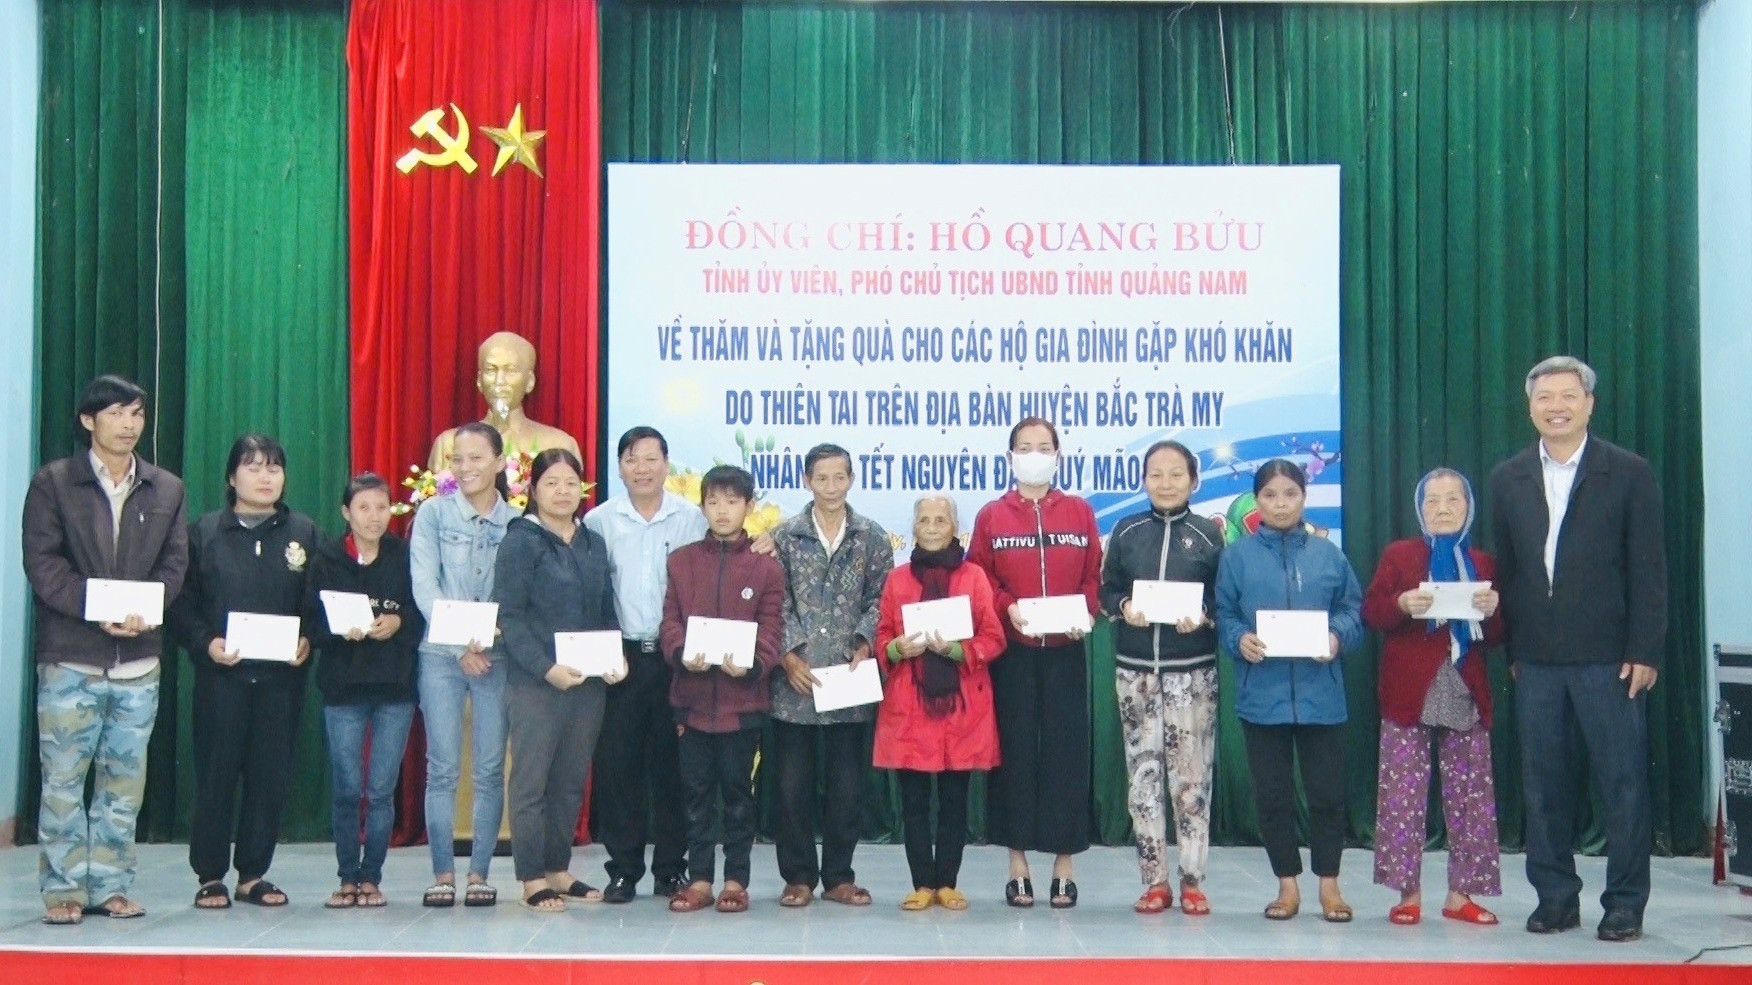 Ông Hồ Quang Bửu - Phó Chủ tịch UBND tỉnh tặng quà tết cho bà con huyện Bắc Trà My Ảnh TÚ VÂN